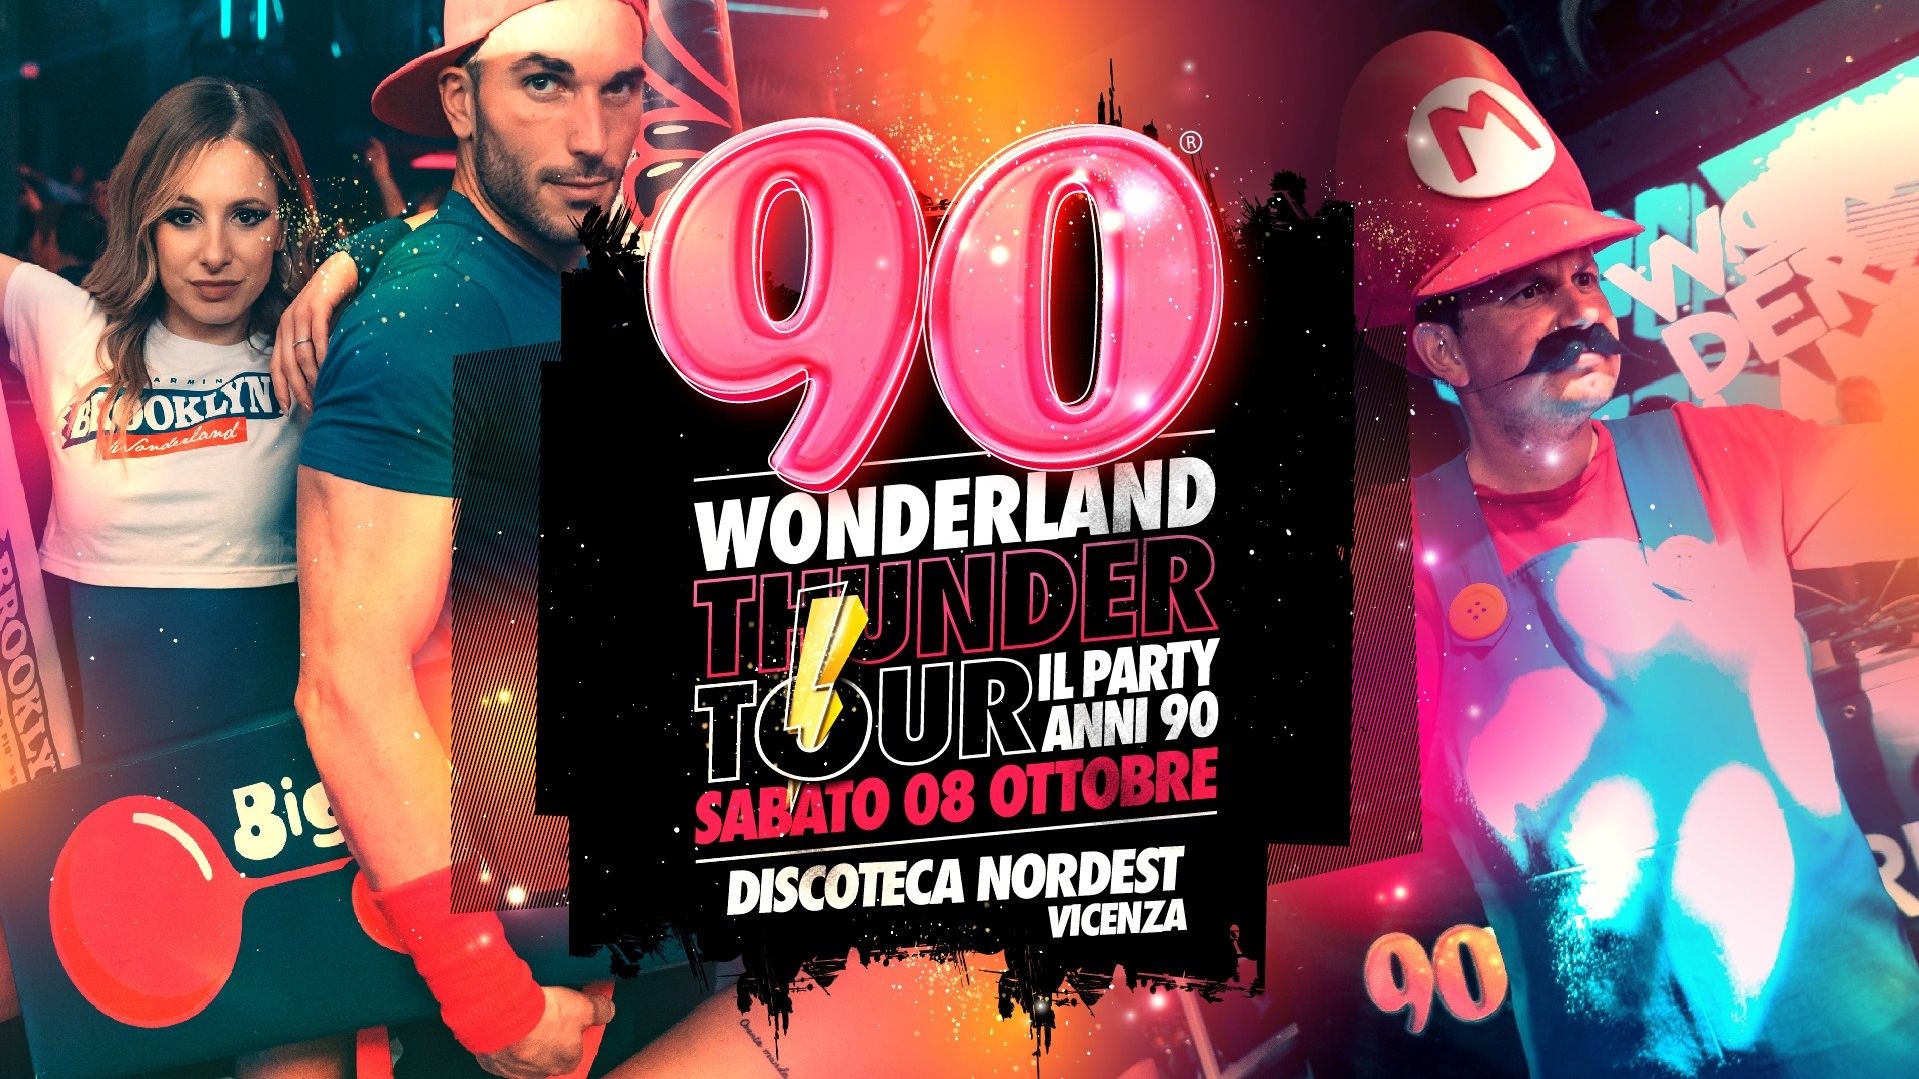 90 Wonderland Thunder Tour